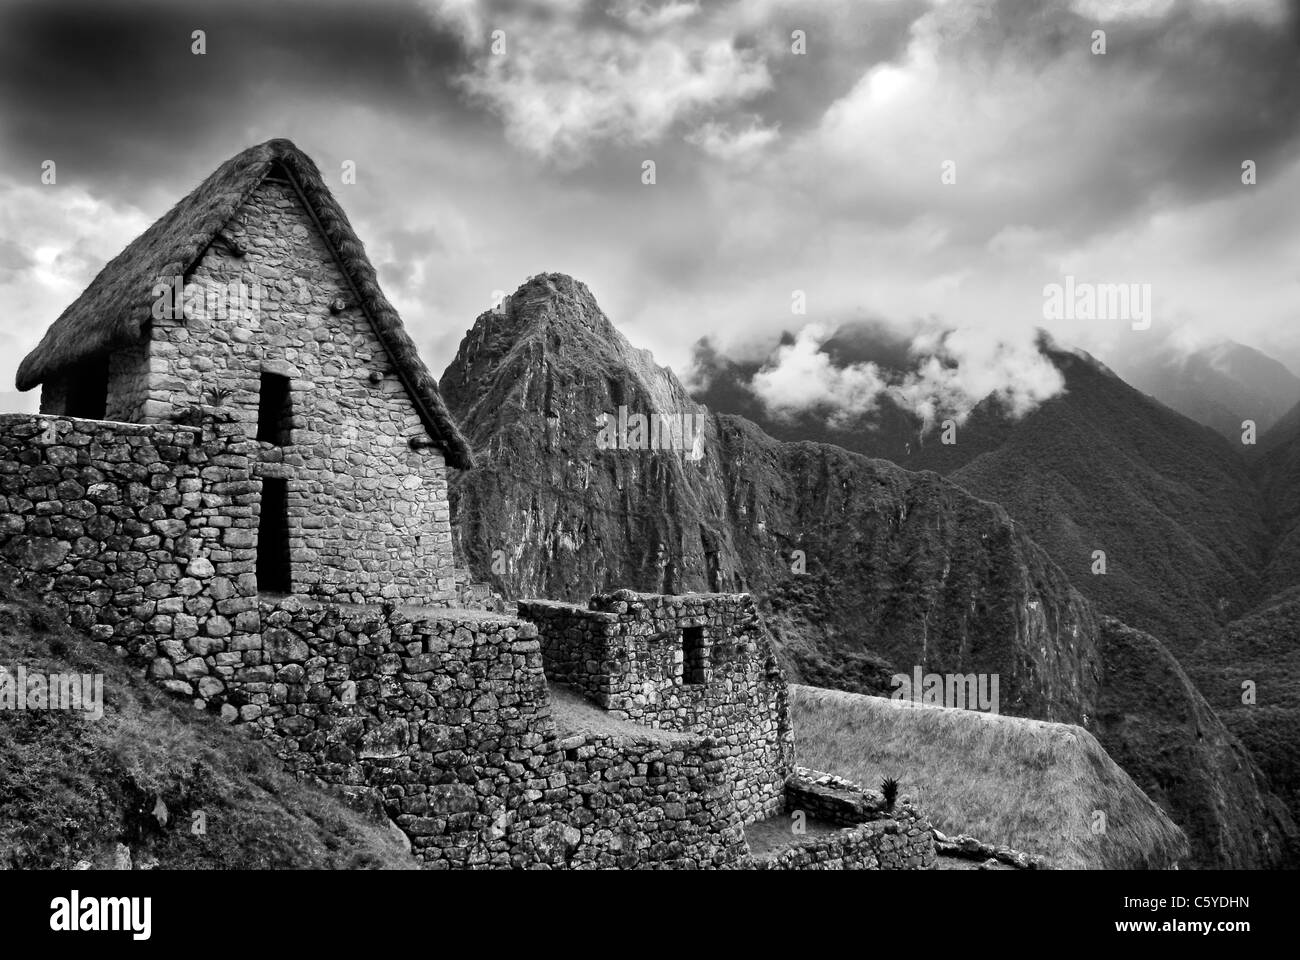 Vista panoramica di Machupicchu in alto nelle Ande peruviane. Con capanna in legno e Misty Mountains. Immagine monotona. Foto Stock